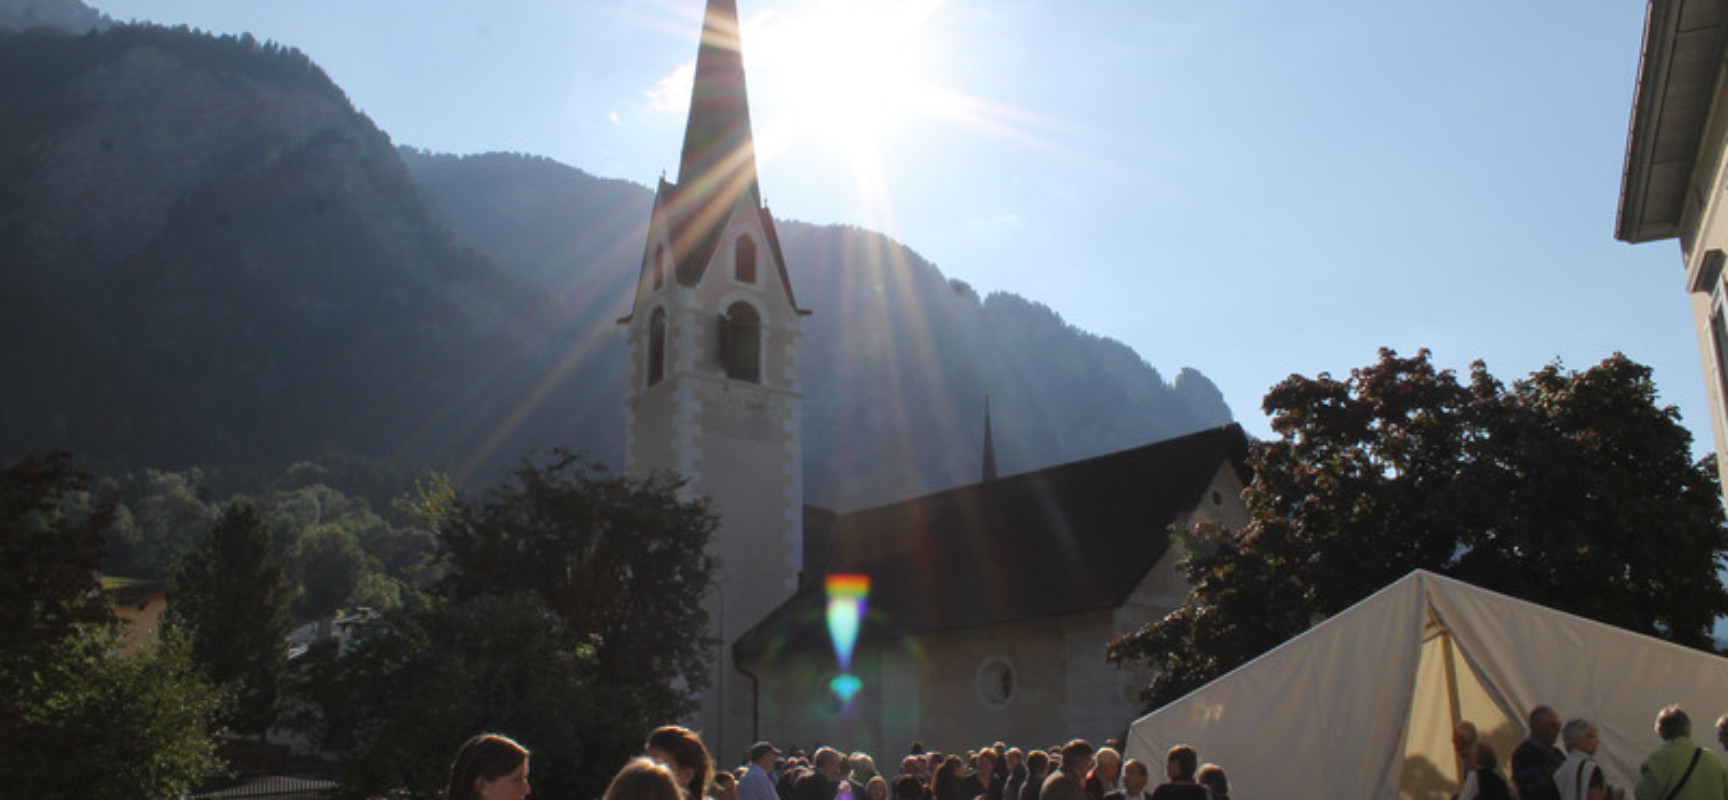 Kirchturm-Restauration: Ein Fest voller Lebensfreude und guter Laune